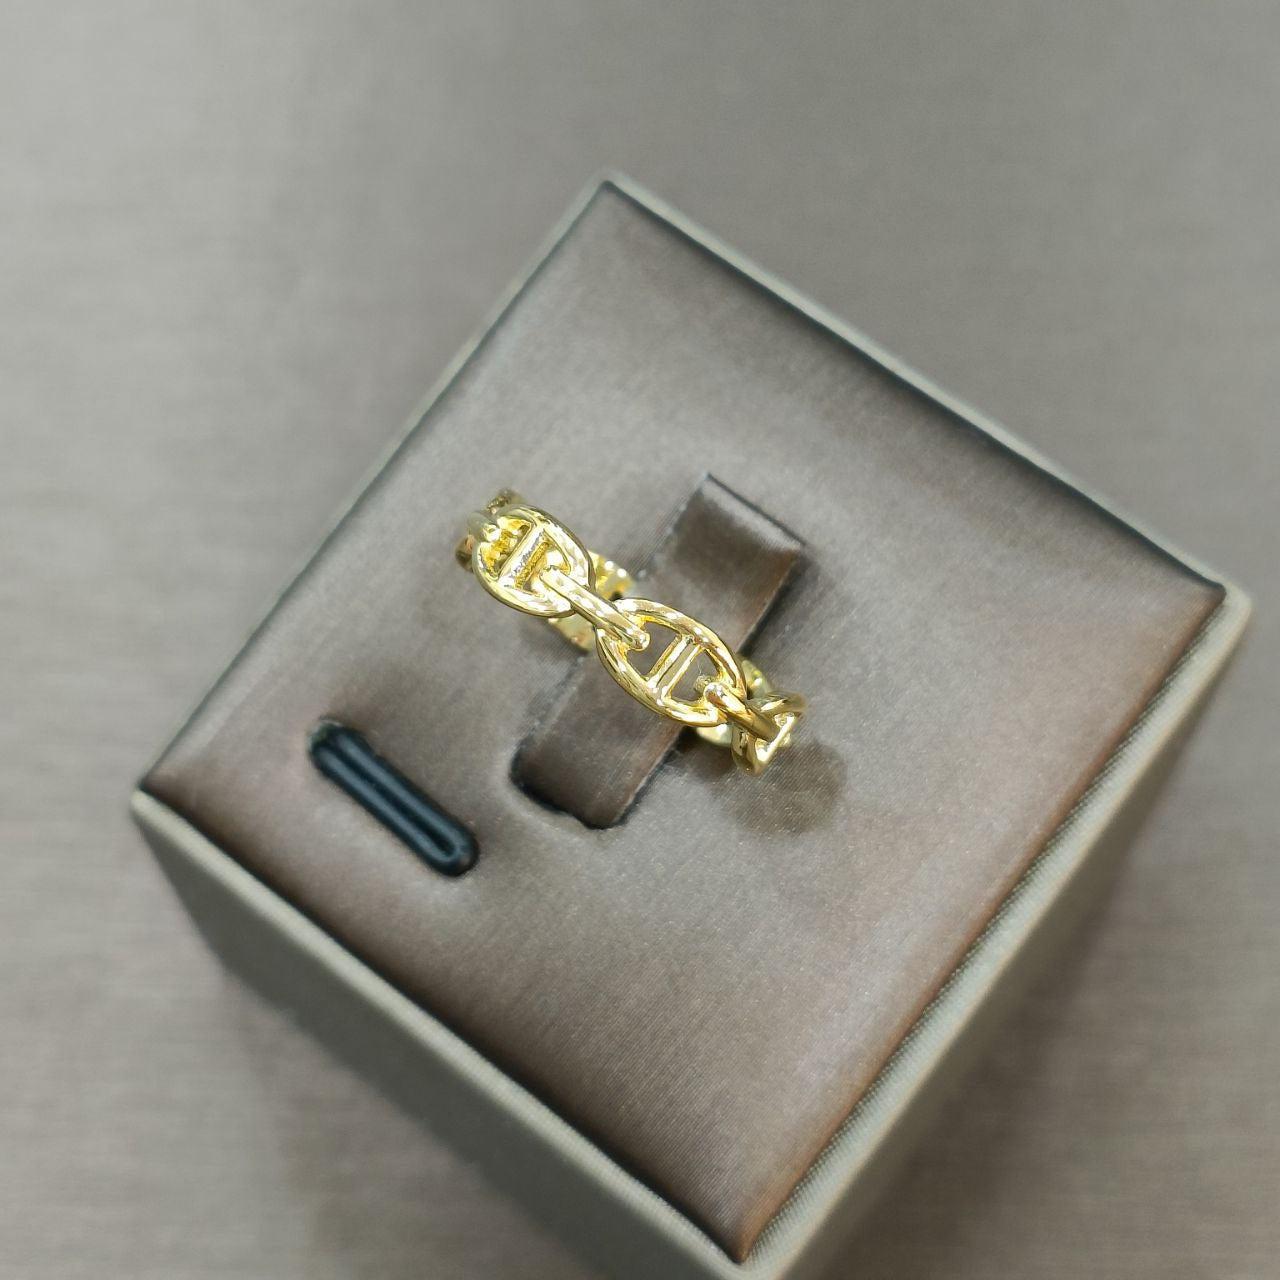 22k / 916 Gold H Design Ring-916 gold-Best Gold Shop